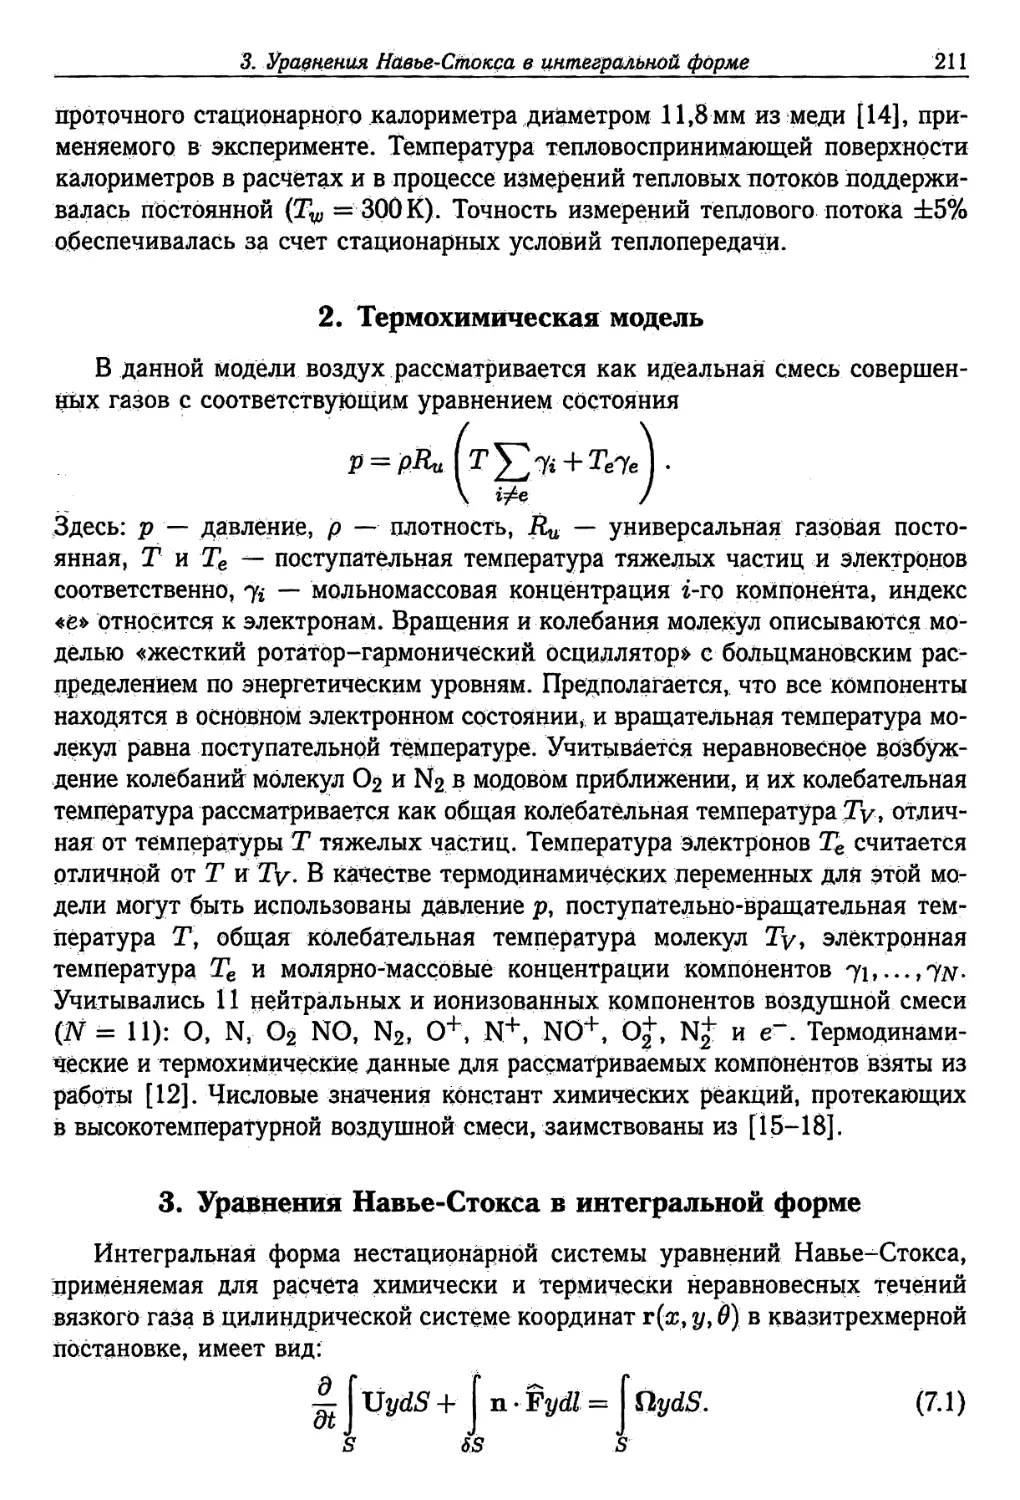 2. Термохимическая модель
3. Уравнения Навье-Стокса в интегральной форме